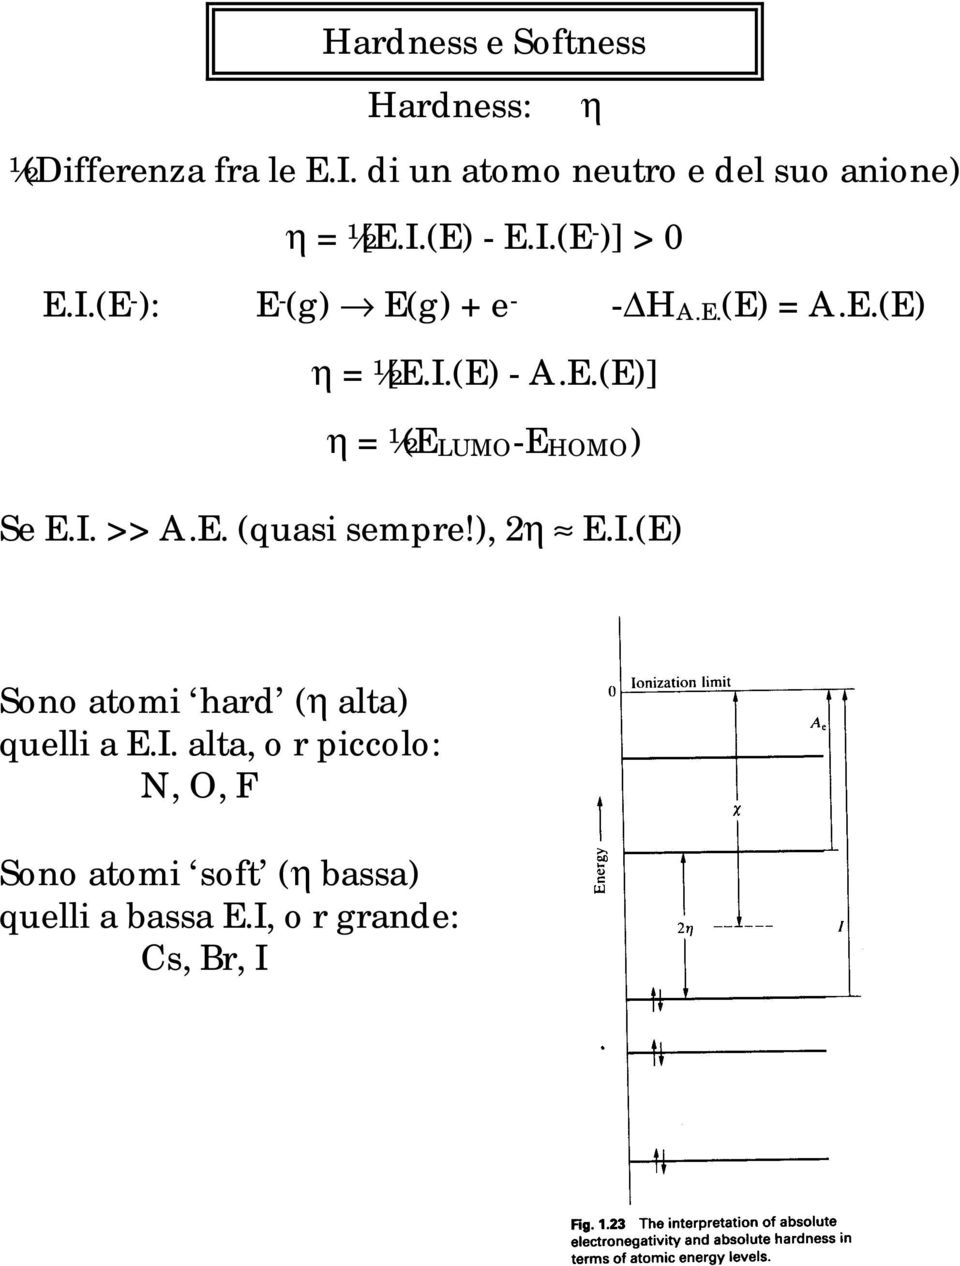 E.(E) = A.E.(E) η = ½[E.I.(E) - A.E.(E)] η = ½(ELUMO-EHOMO) Se E.I. >> A.E. (quasi sempre!), 2η E.I.(E) Sono atomi hard (η alta) quelli a E.